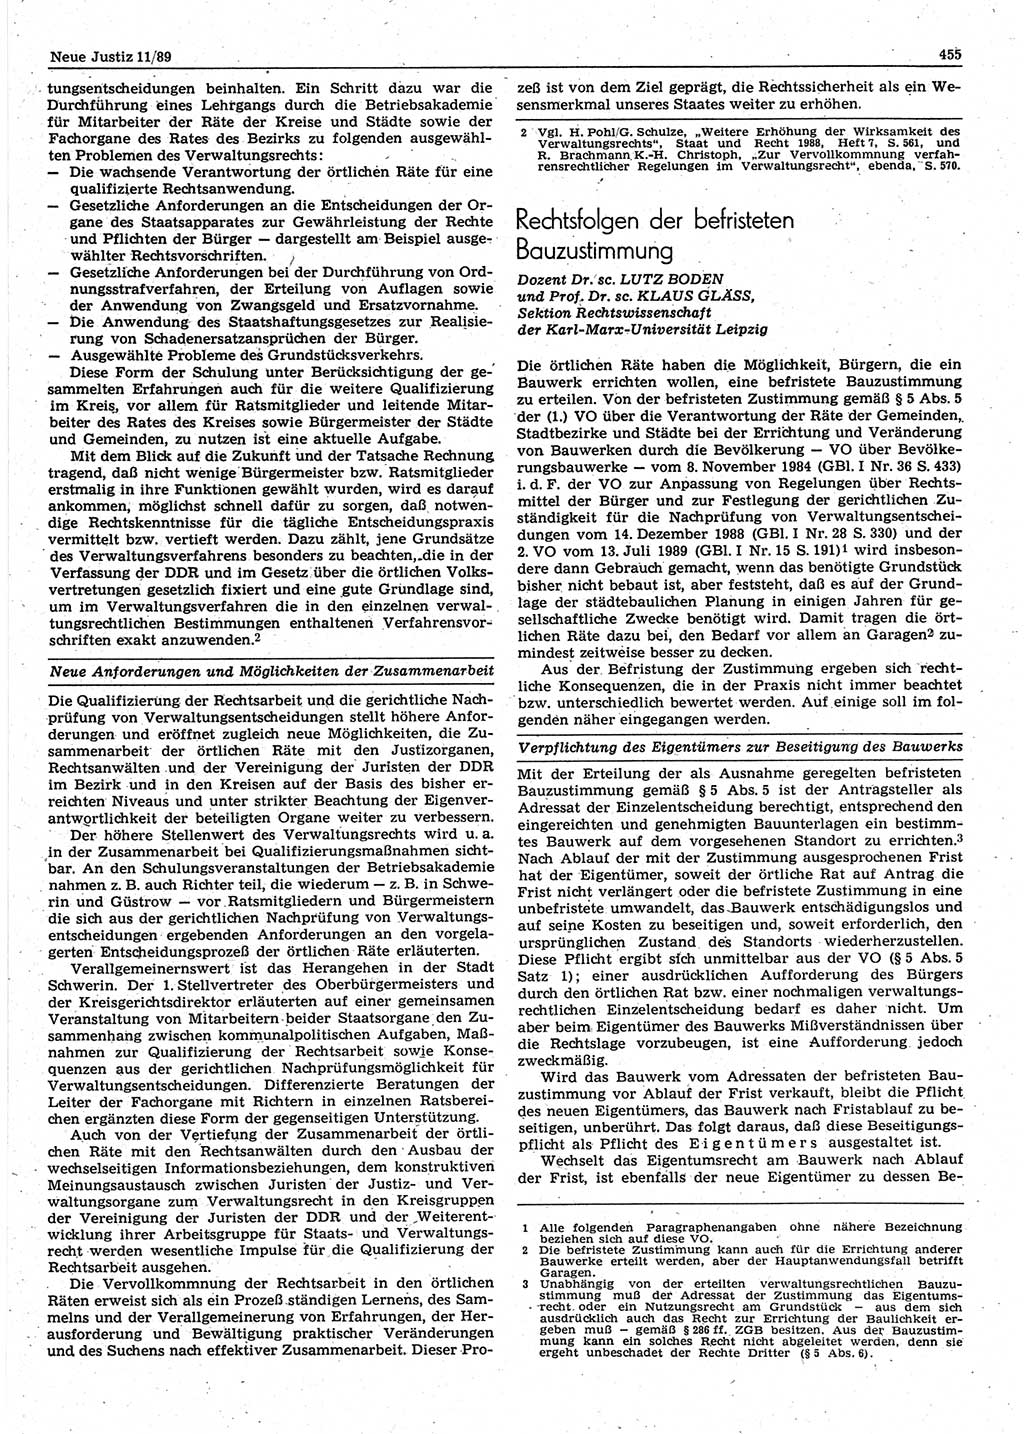 Neue Justiz (NJ), Zeitschrift für sozialistisches Recht und Gesetzlichkeit [Deutsche Demokratische Republik (DDR)], 43. Jahrgang 1989, Seite 455 (NJ DDR 1989, S. 455)